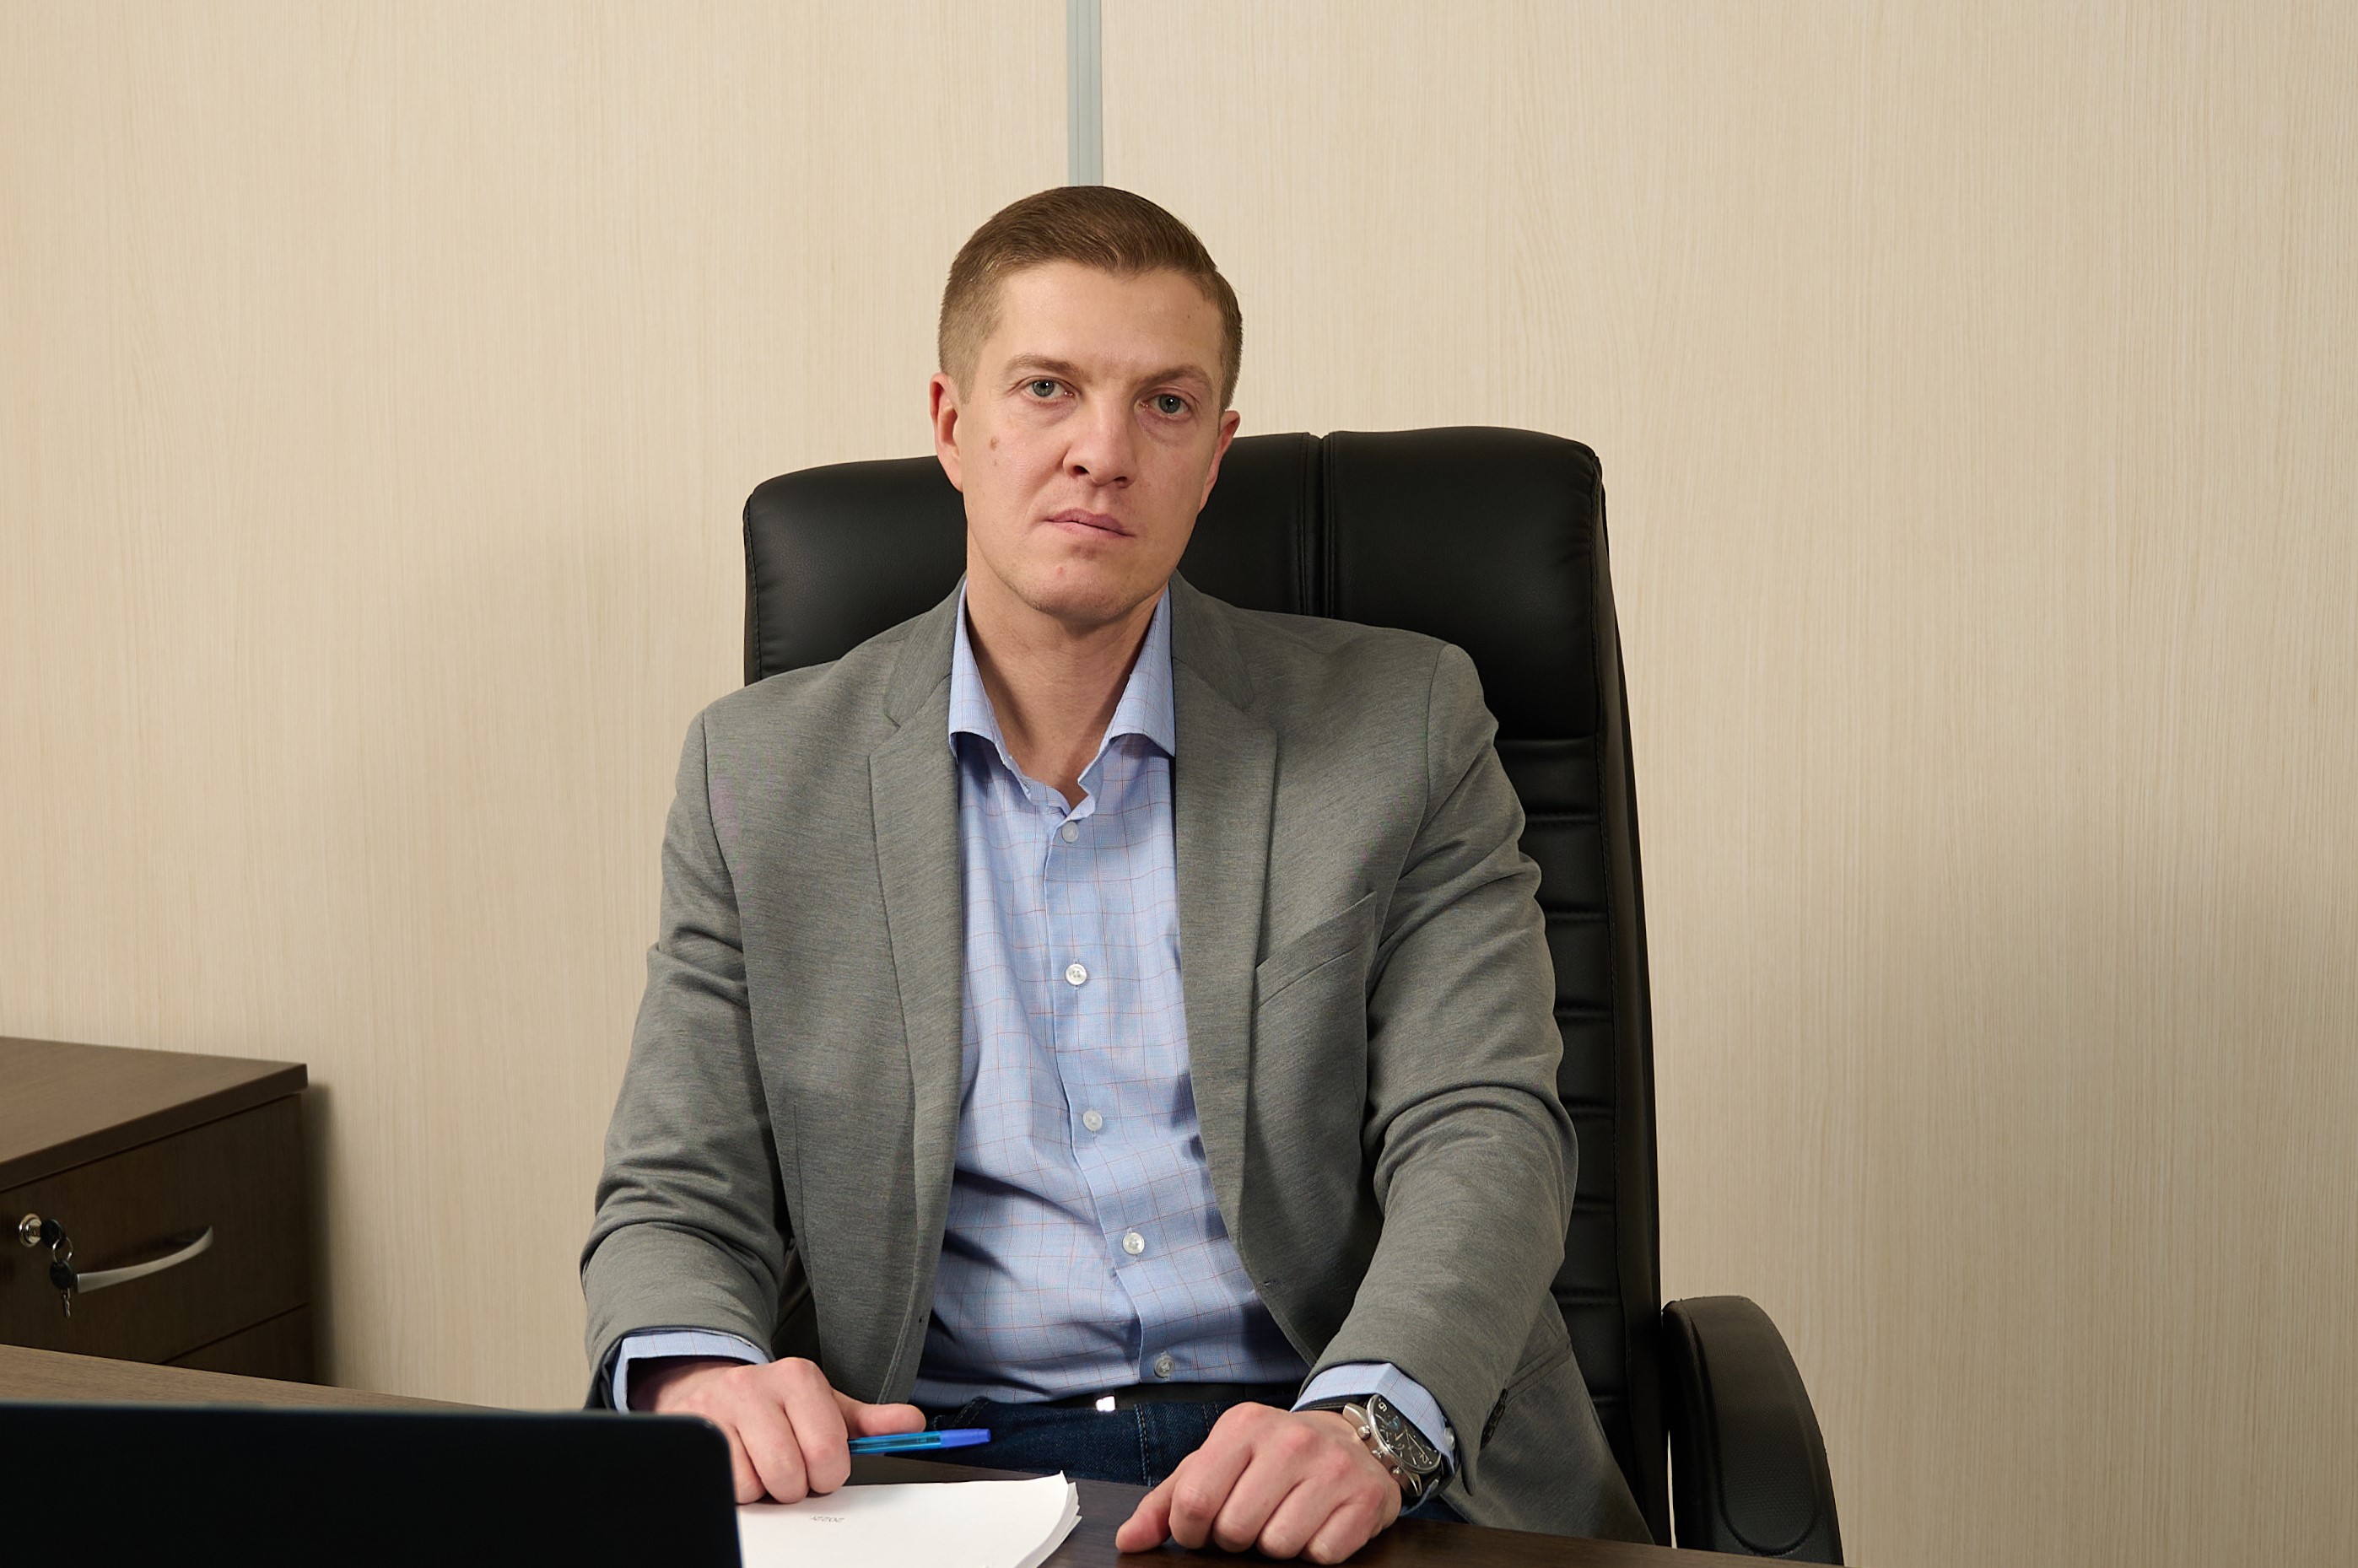 Новый директор "Ситиматик-Саратов" обещает использовать свой опыт работы в ХМАО. Скандалы неизбежны?